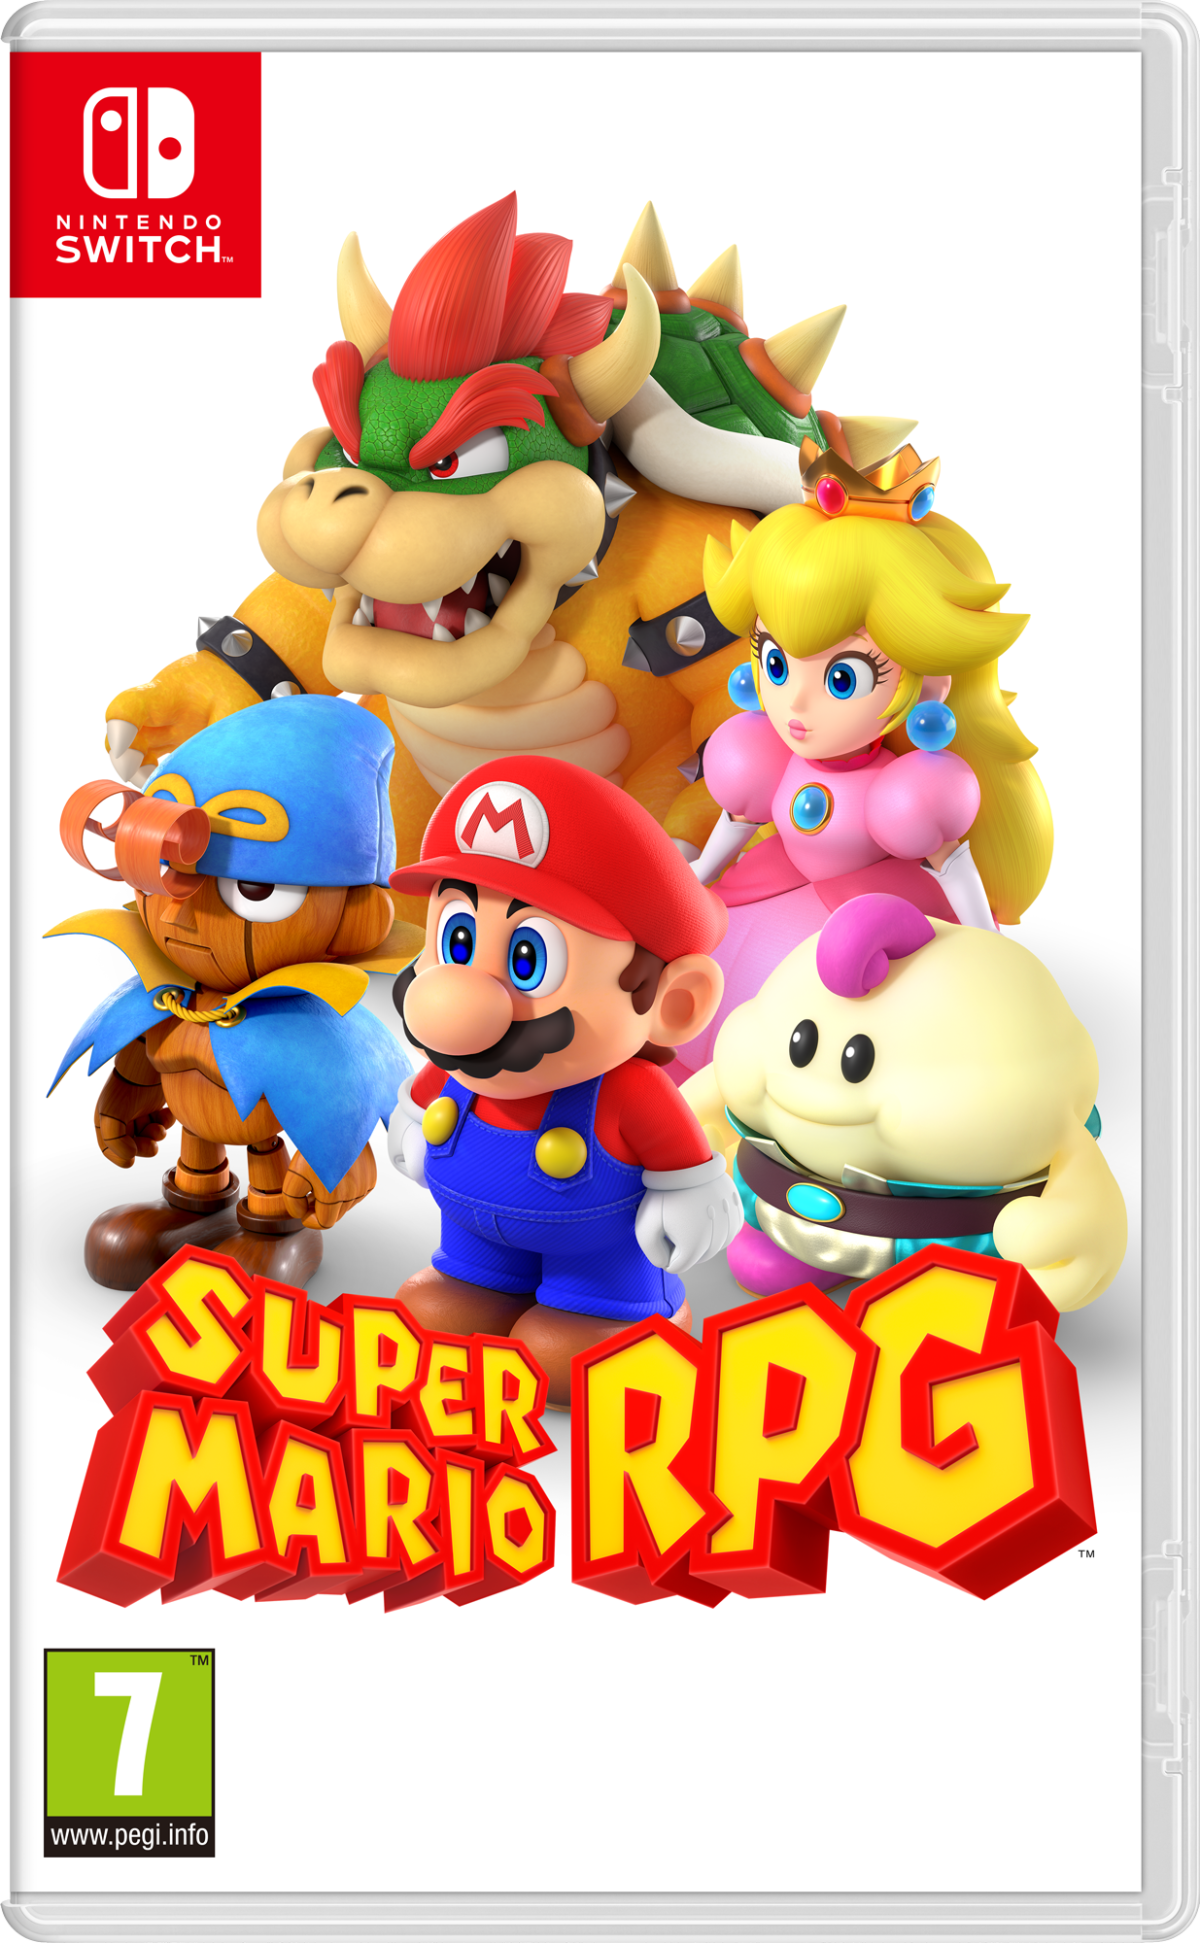 Image Super Mario RPG 29